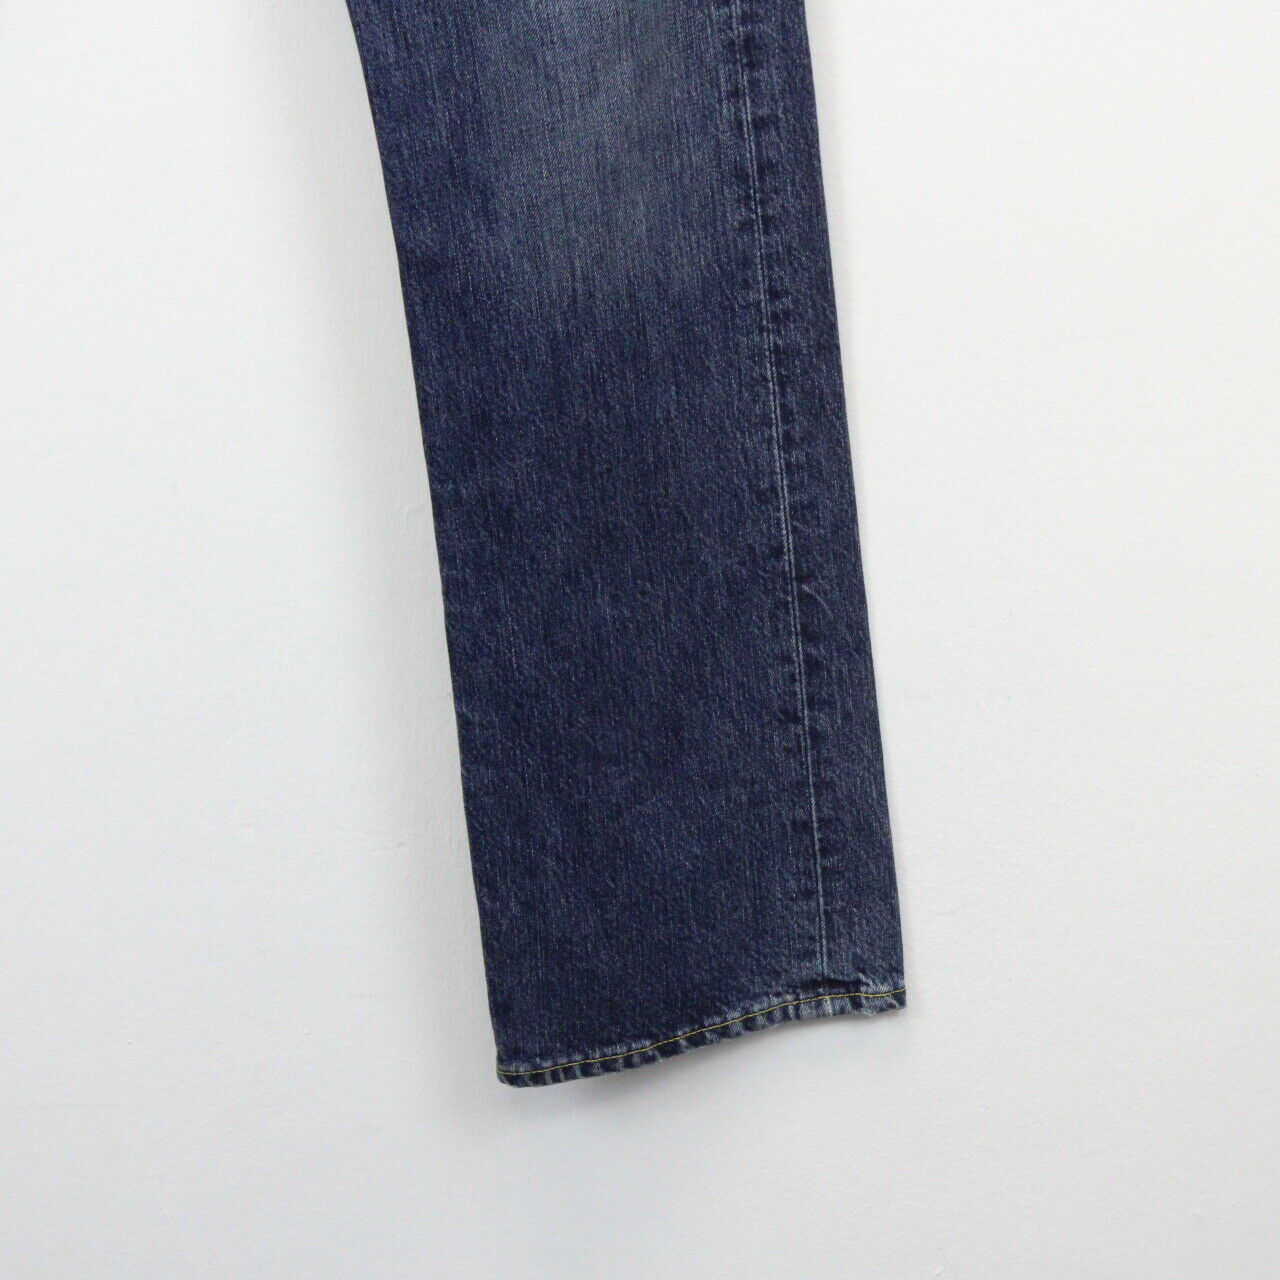 Womens LEVIS 501 Jeans Blue | W29 L34